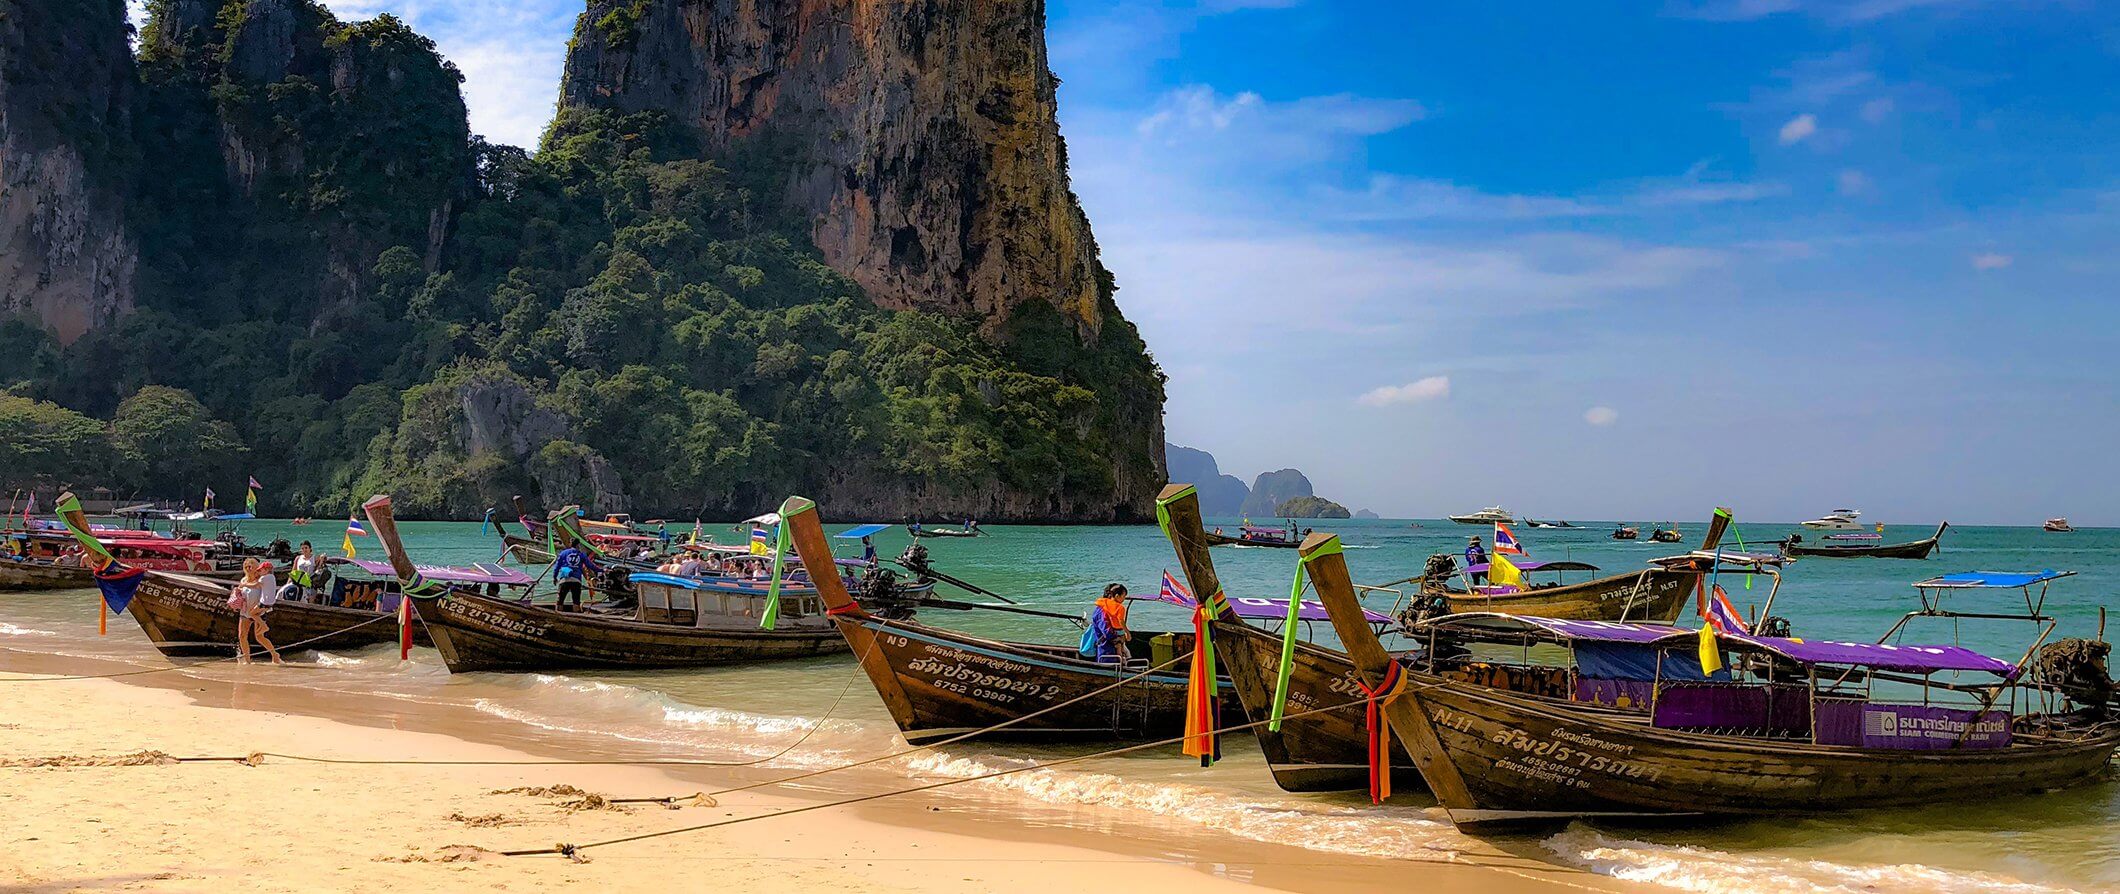 adam denoncour recommends Thailand Sex Tourism Guide